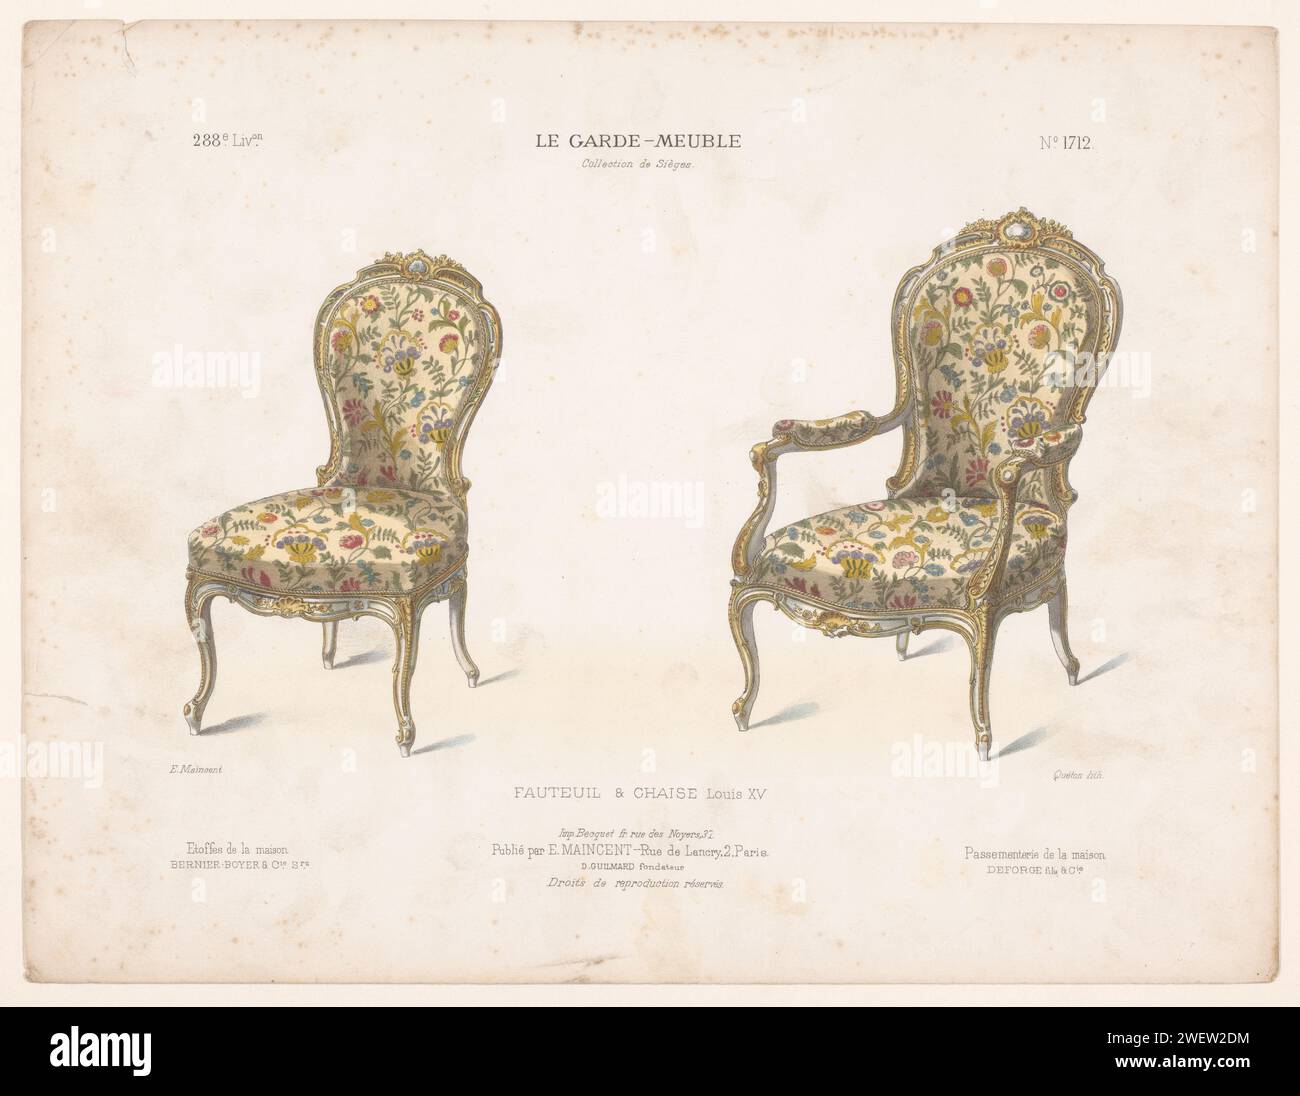 Sessel und Stuhl, Quéton, 1885 - 1895 Druck Sessel und Stuhl im Louis XV Stil. Drucken Sie aus dem 288. Livraison. Papiermöbel Stockfoto